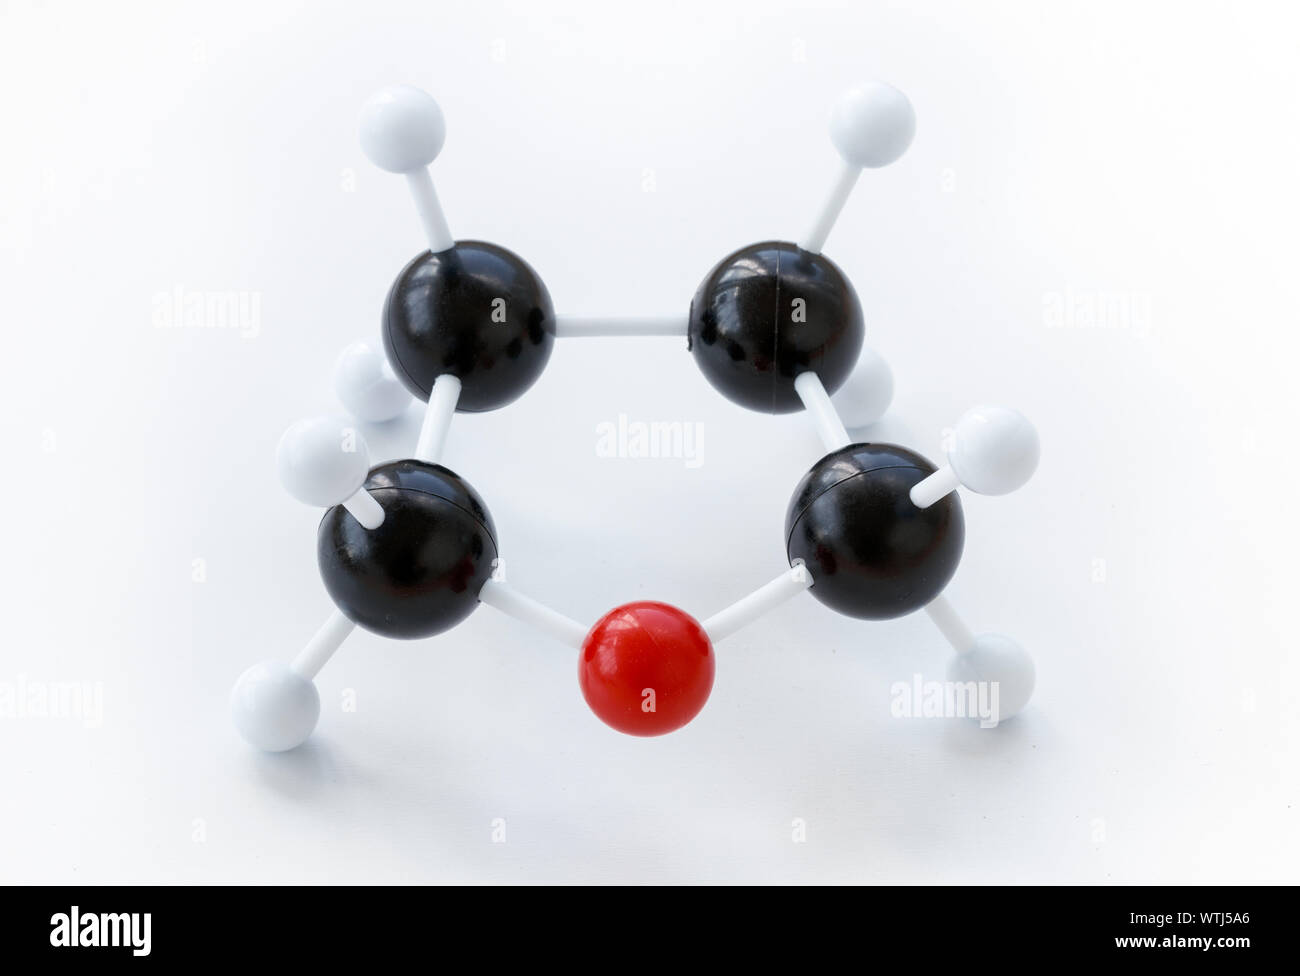 Kunststoff Kugel-und-stick Modell eines Tetrahydrofuran (THF) Molekül (Formel: (CH2)4 O oder C4H8O) auf einem weißen Hintergrund. Tetrahydrofuran ist ein Beispiel für eine Stockfoto